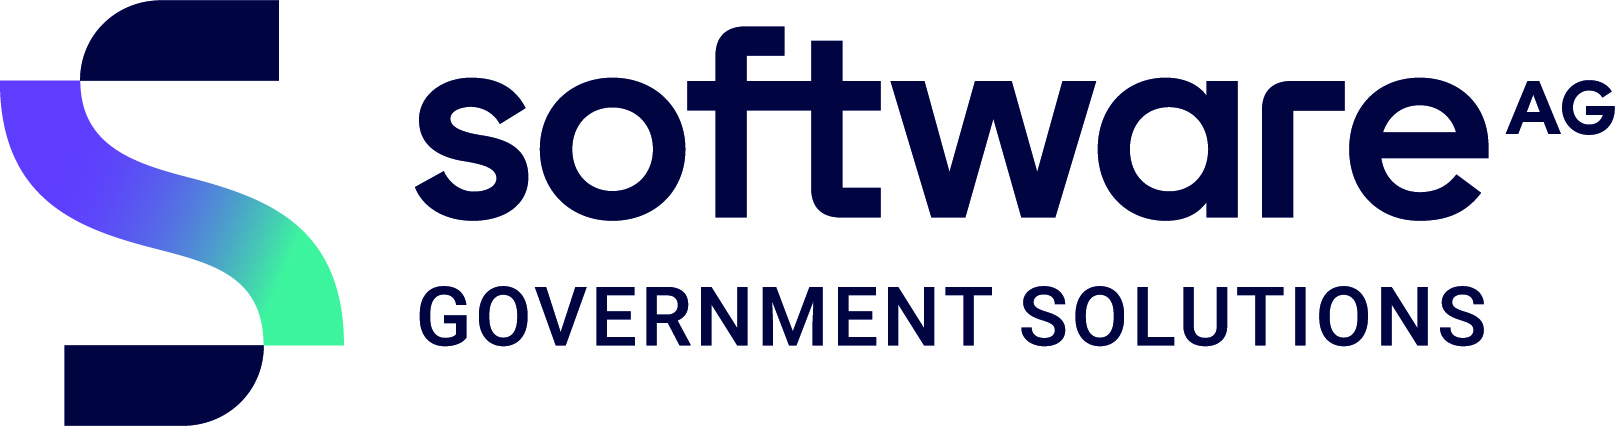 Software-ag-logo-new.jpg